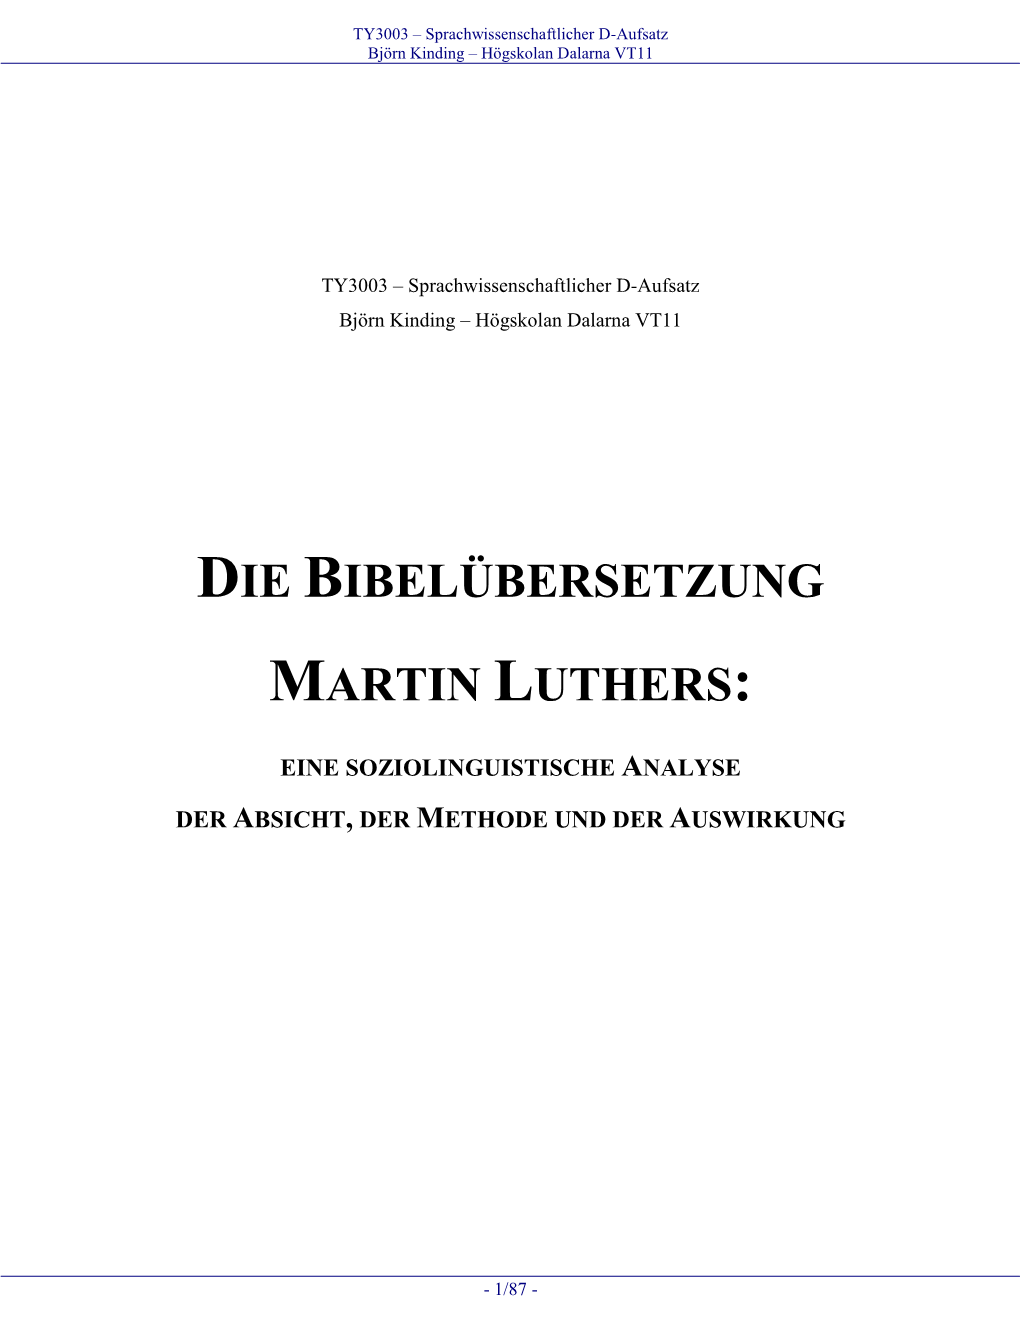 Die Bibelübersetzung Martin Luthers